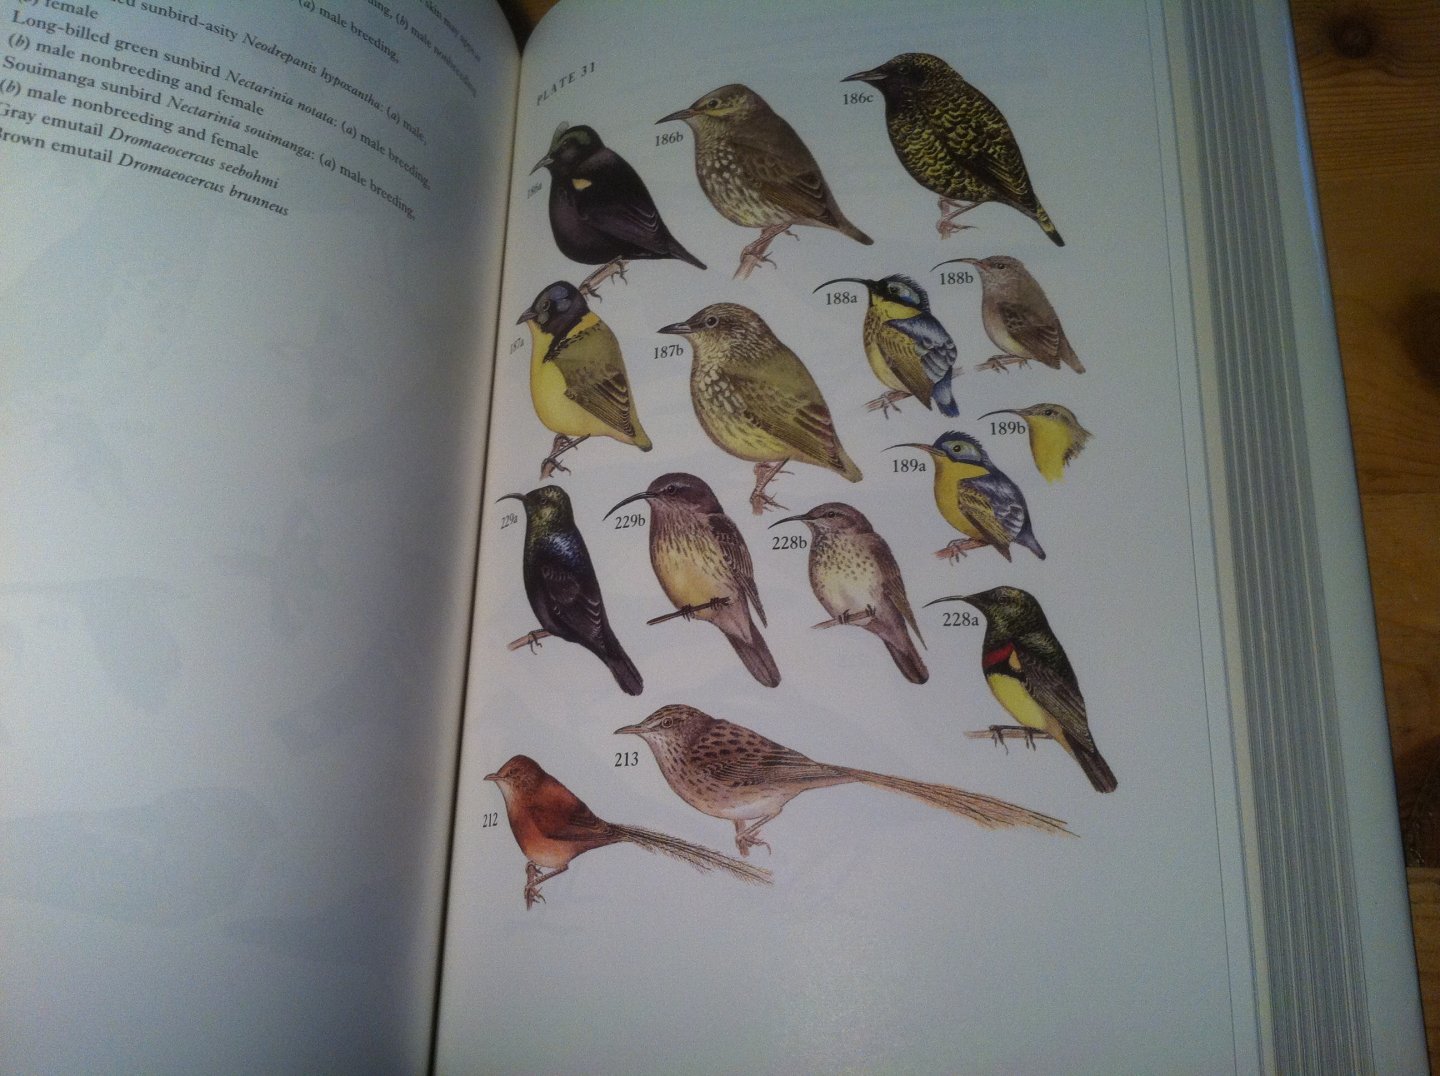 Langrand, O & V Bretagnolle - Guide to the Birds of Madagascar